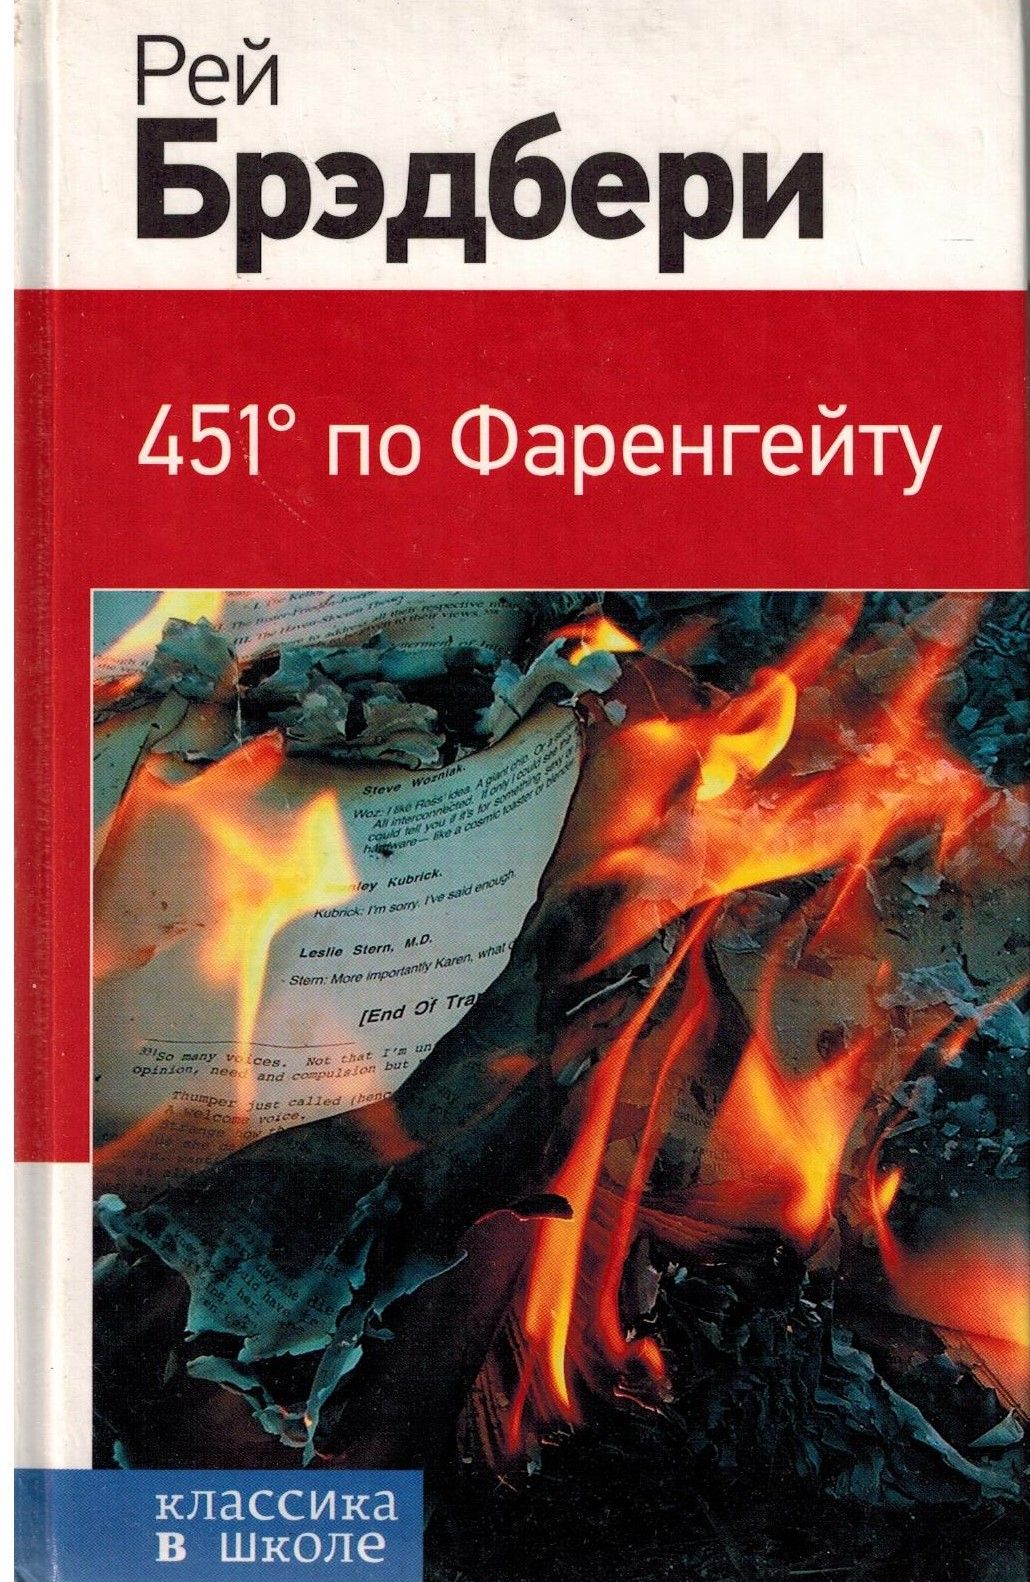 Почему 451 фаренгейту. Книга Брэдбери 451 градус по Фаренгейту. 451 По Фаренгейту книга обложка.